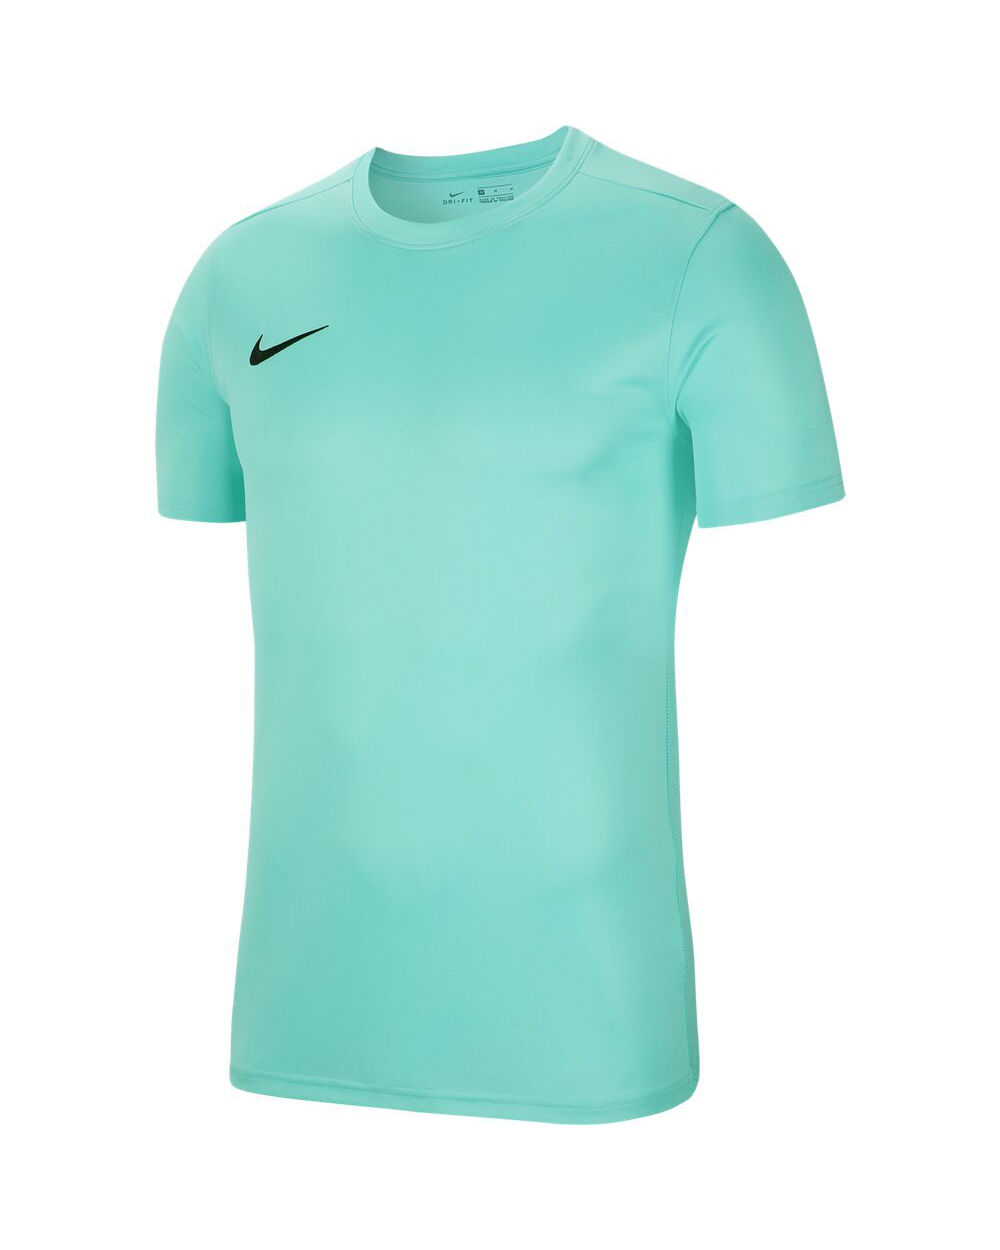 Camiseta Nike Park VII Verde De Agua para Hombre - BV6708-354